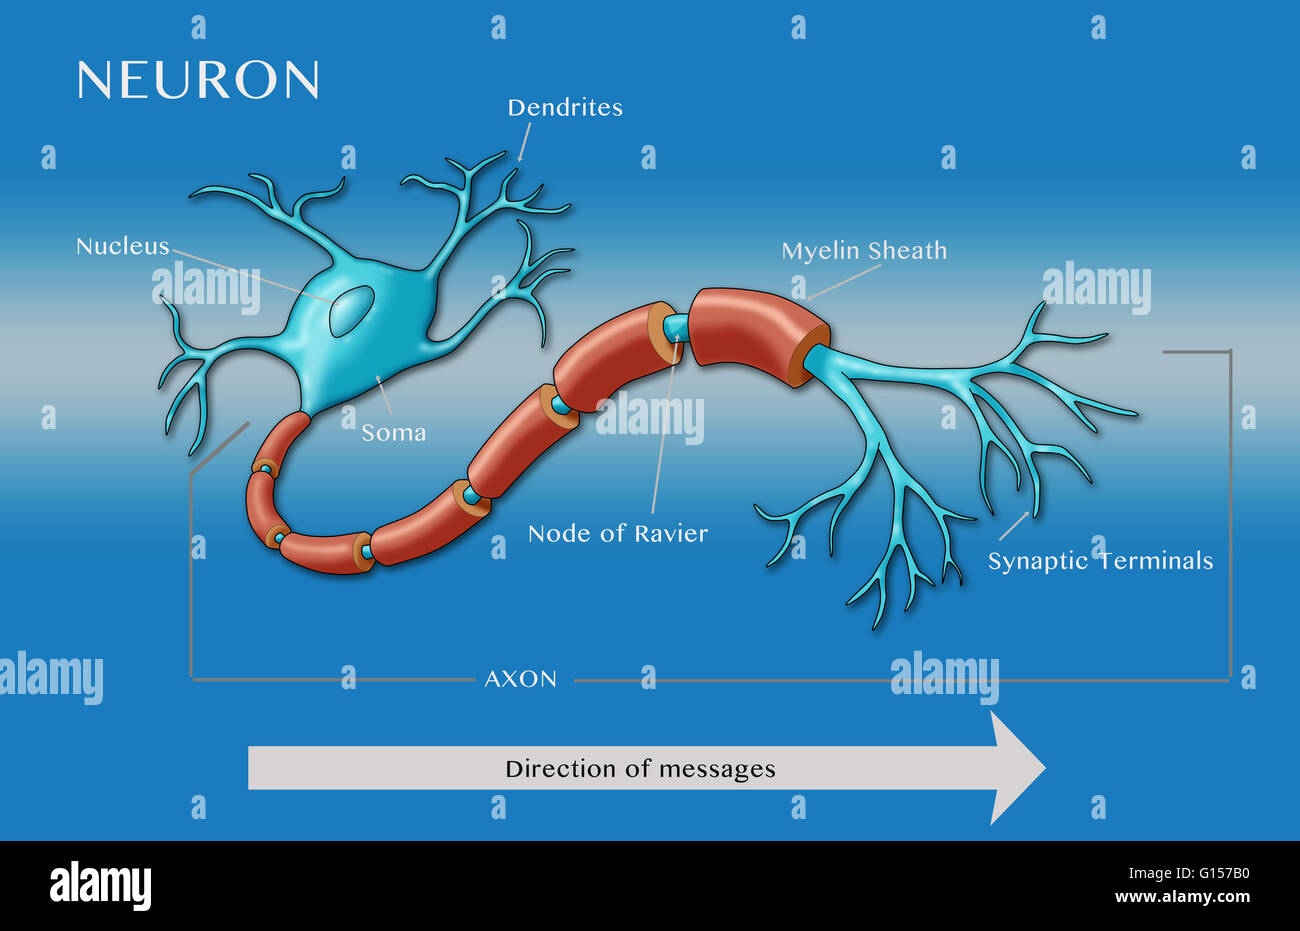 Illustration d'un neurone moteur, montrant de dendrites noyau et soma (fin  bleu à gauche) et certaines parties de l'axone y compris le noeud de ravier,  gaine de myéline, et les terminaux synaptiques.